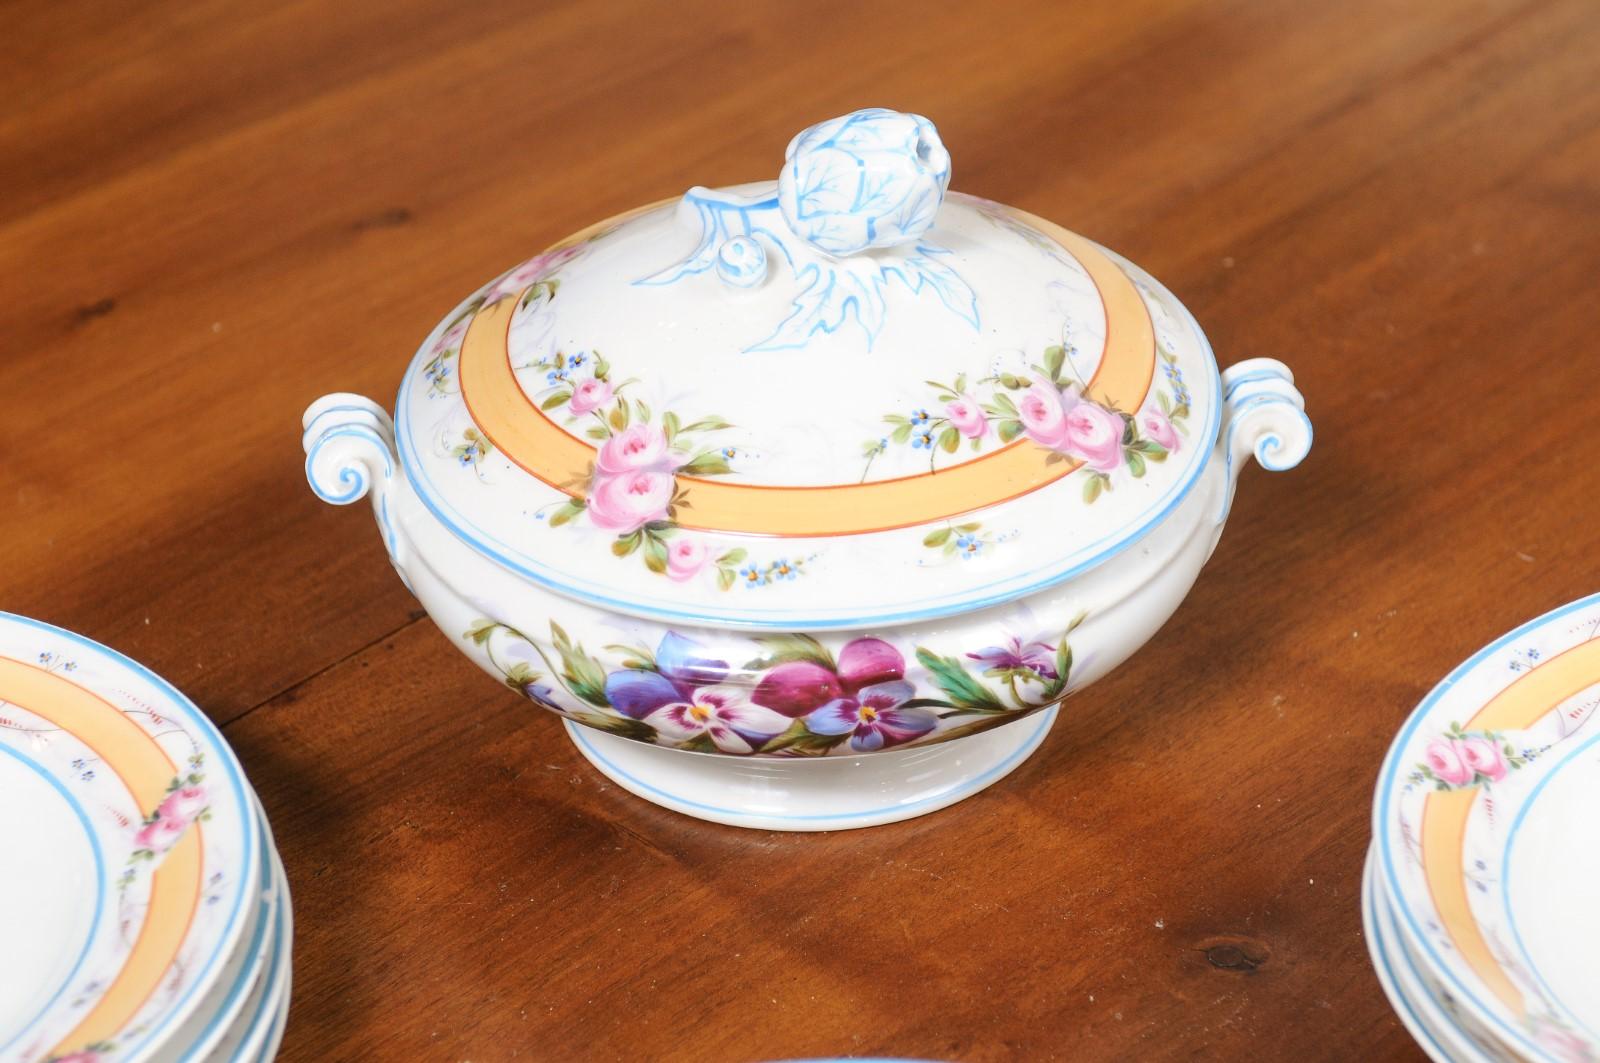 Porcelaine de Paris 19th Century Floral Dish Set with Casserole and Plates For Sale 2